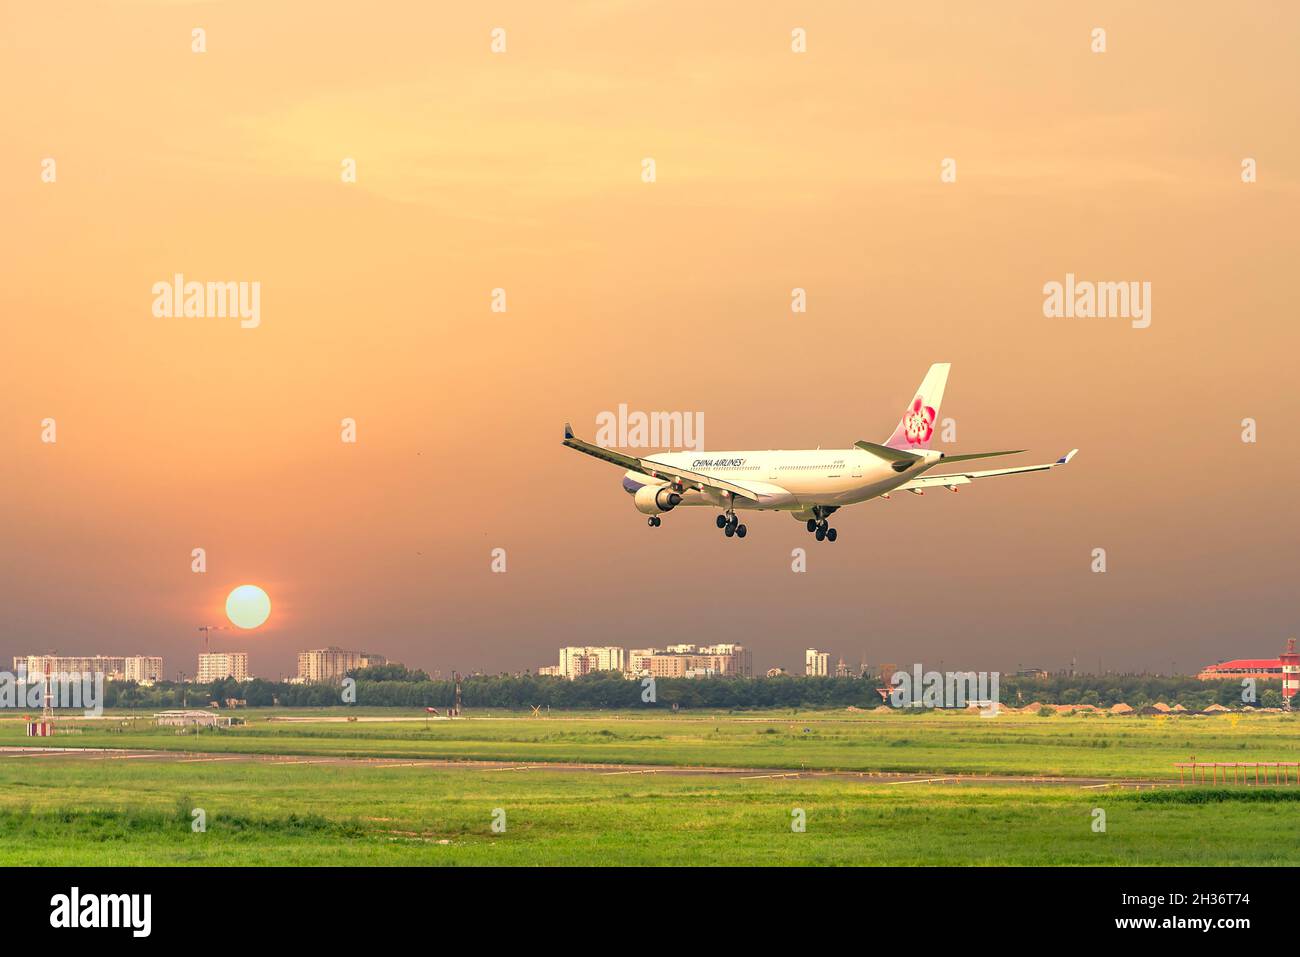 Avion cargo portant le numéro B-18360 Airbus A330 de China Airlines atterrissant à l'aéroport international de Tan son Nhat, Ho Chi Minh-ville, Vietnam Banque D'Images